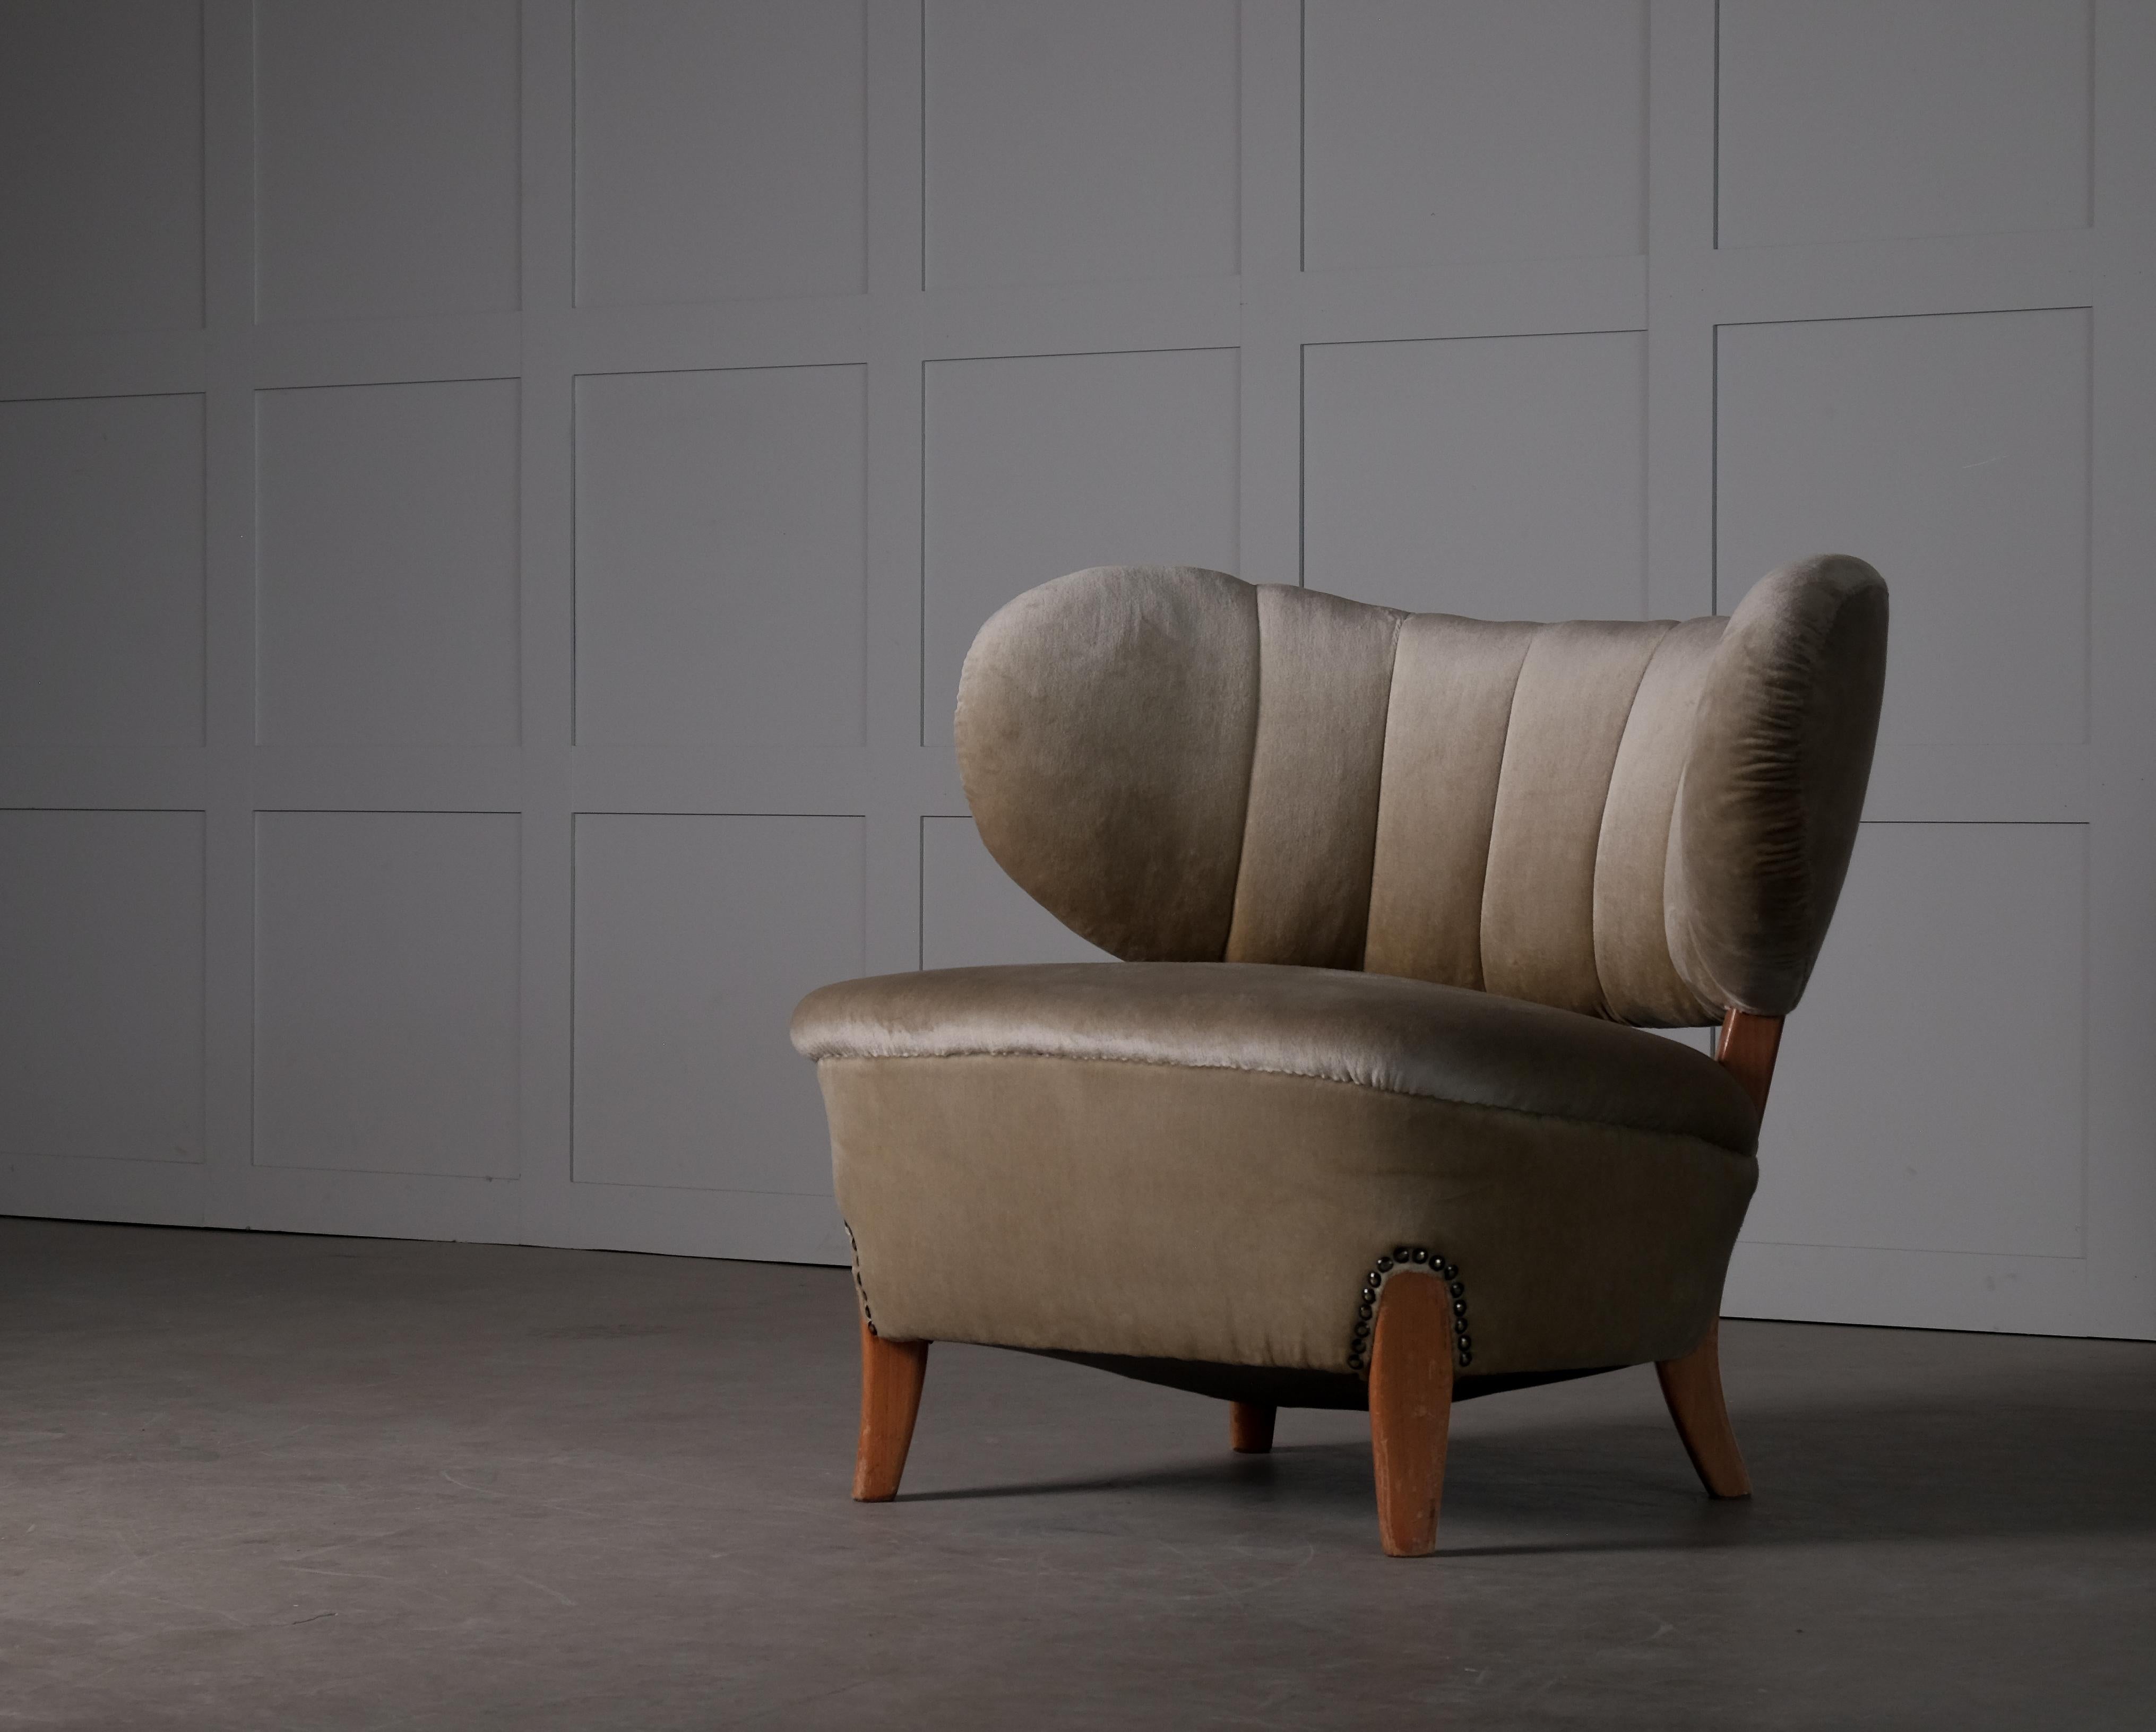 Samt-Sessel, entworfen von Otto Schulz, hergestellt von Boet, Schweden, 1940er Jahre.
 